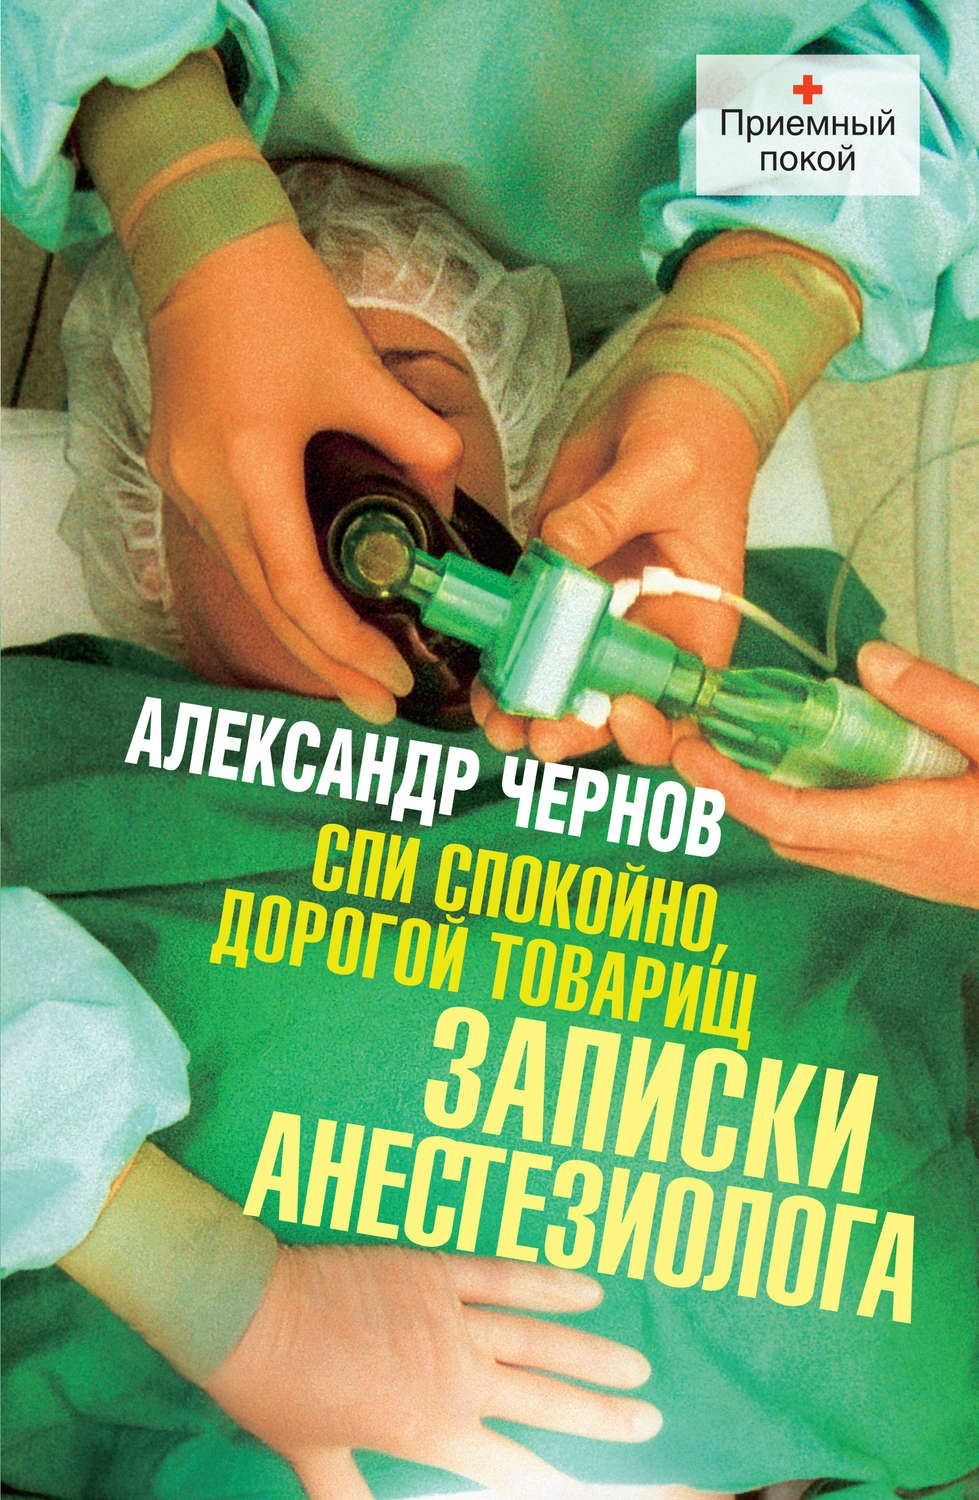 «Записки врача-анестезиолога»